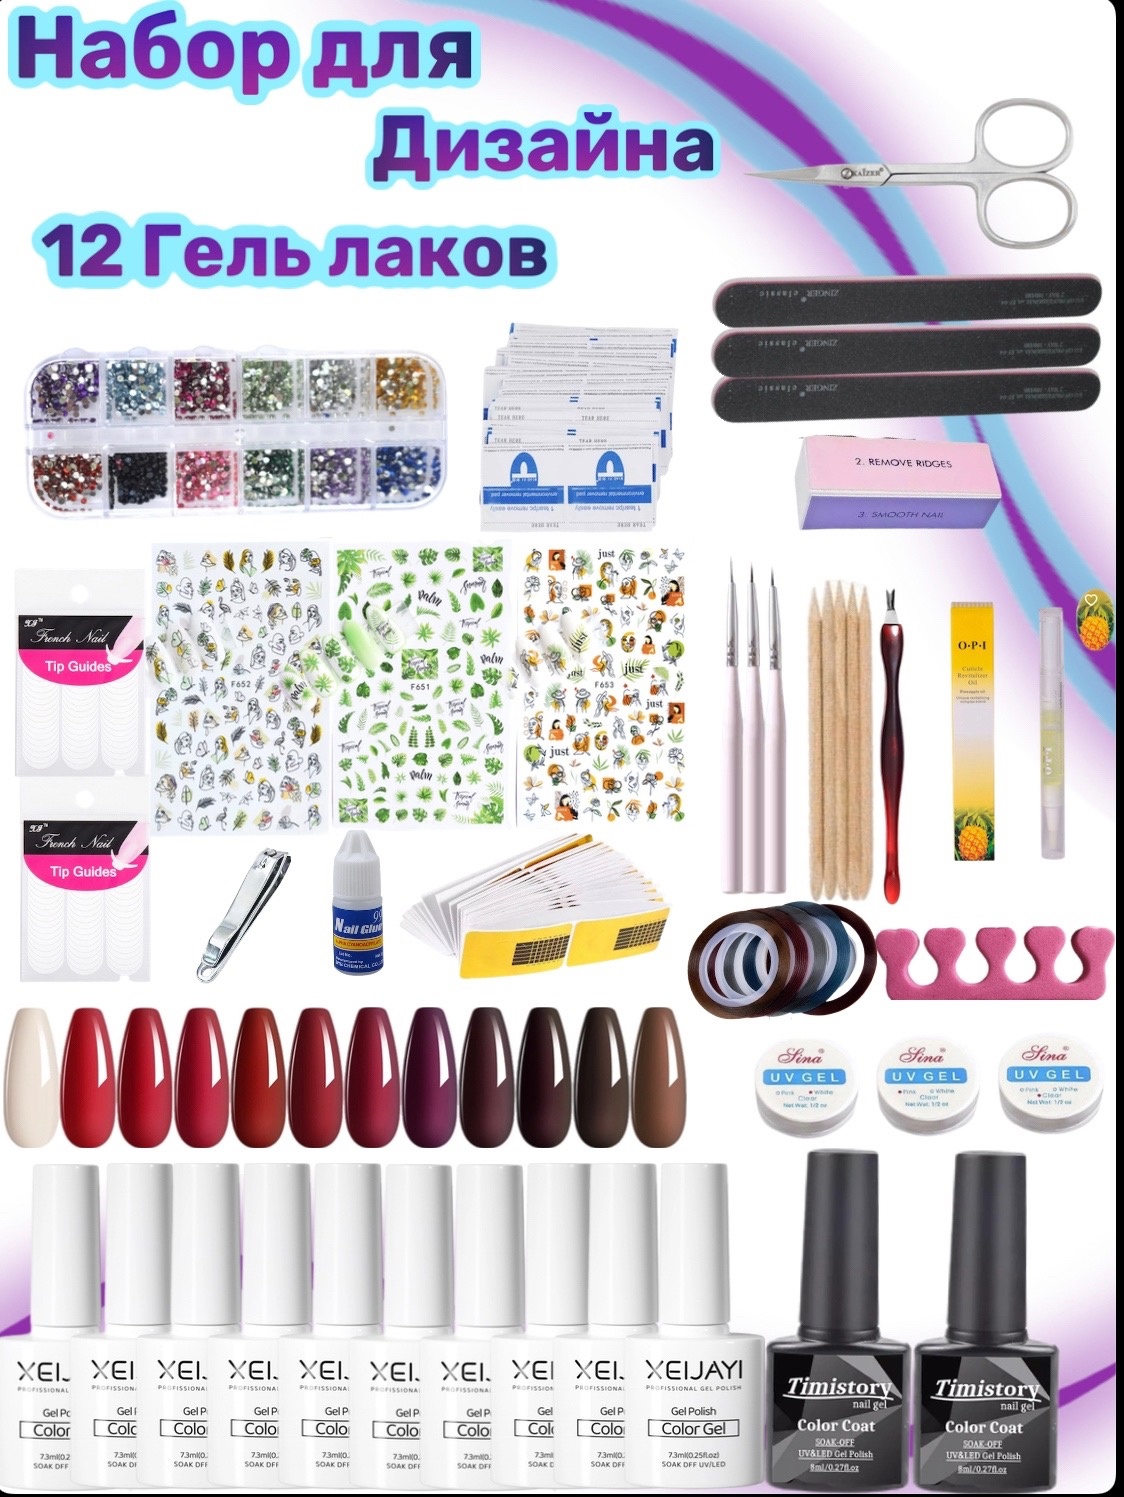 Маникюрный набор для дизайна ногтей Karvel 40 предметов lukky набор для дизайна лица со стразами дизайнер сет